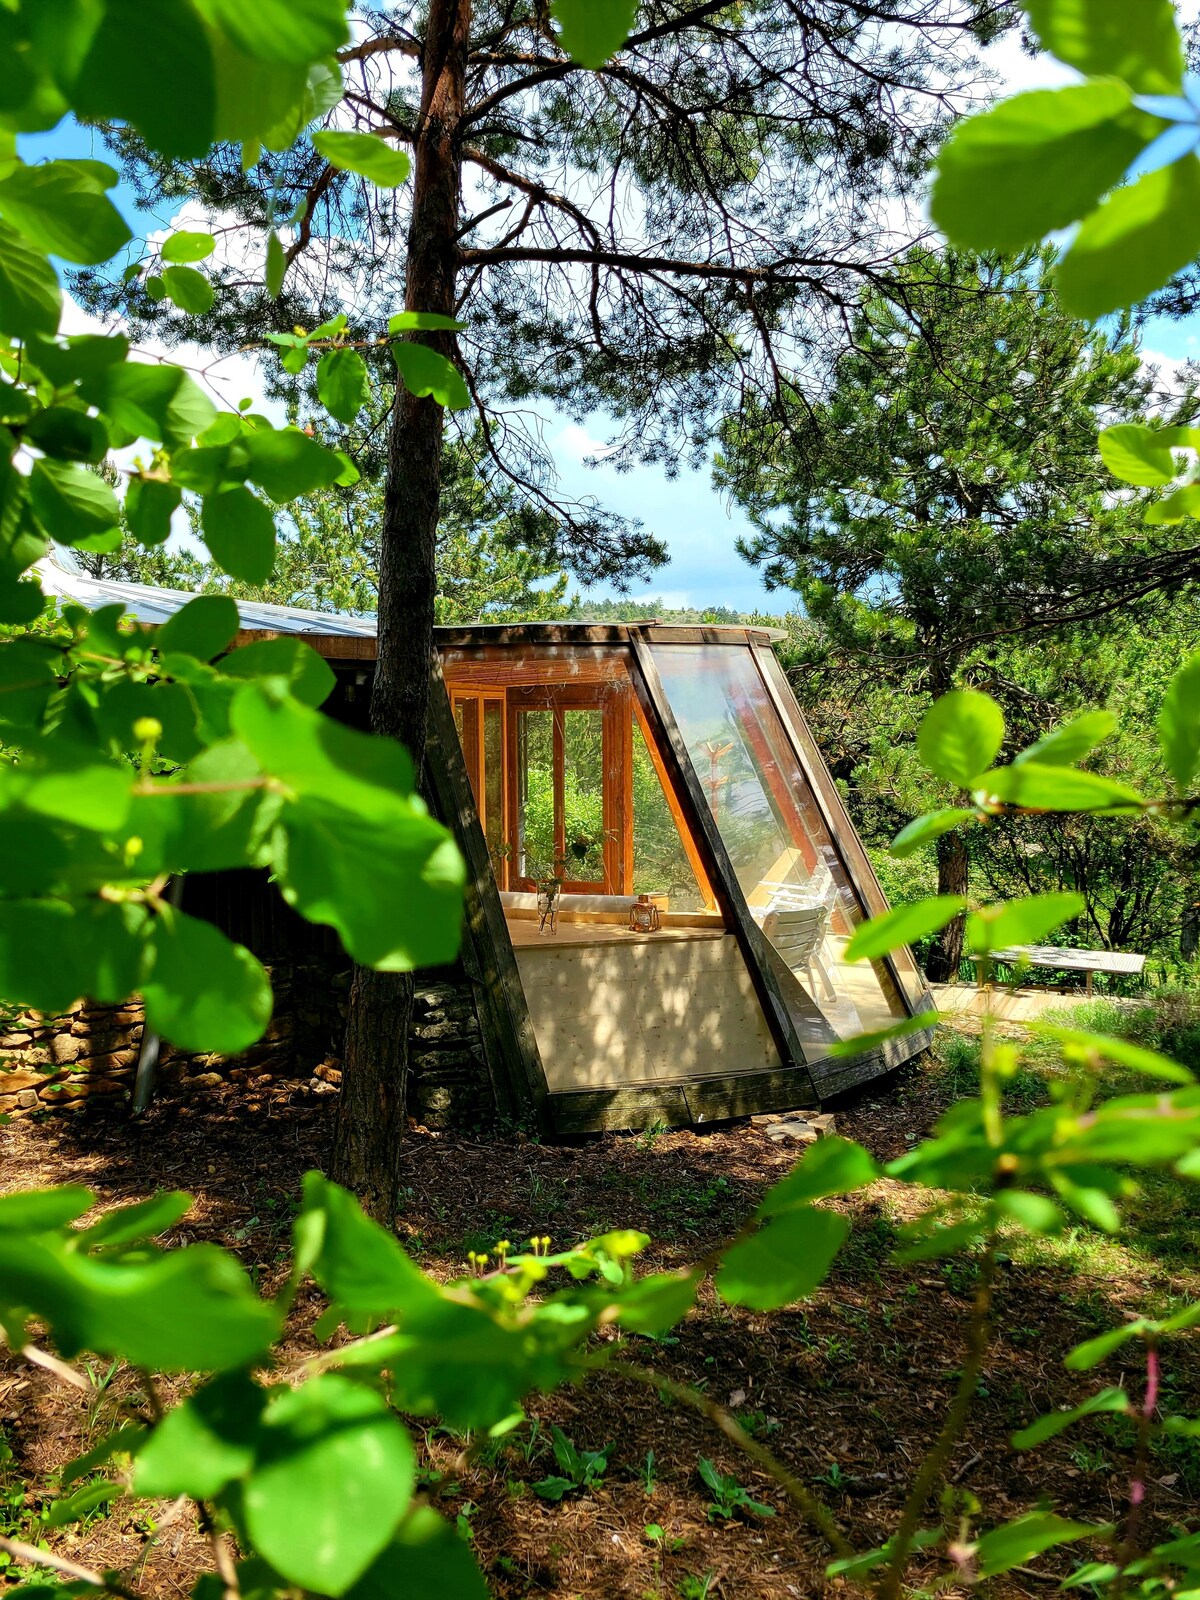 Une maison ronde, en bois, dans la nature.